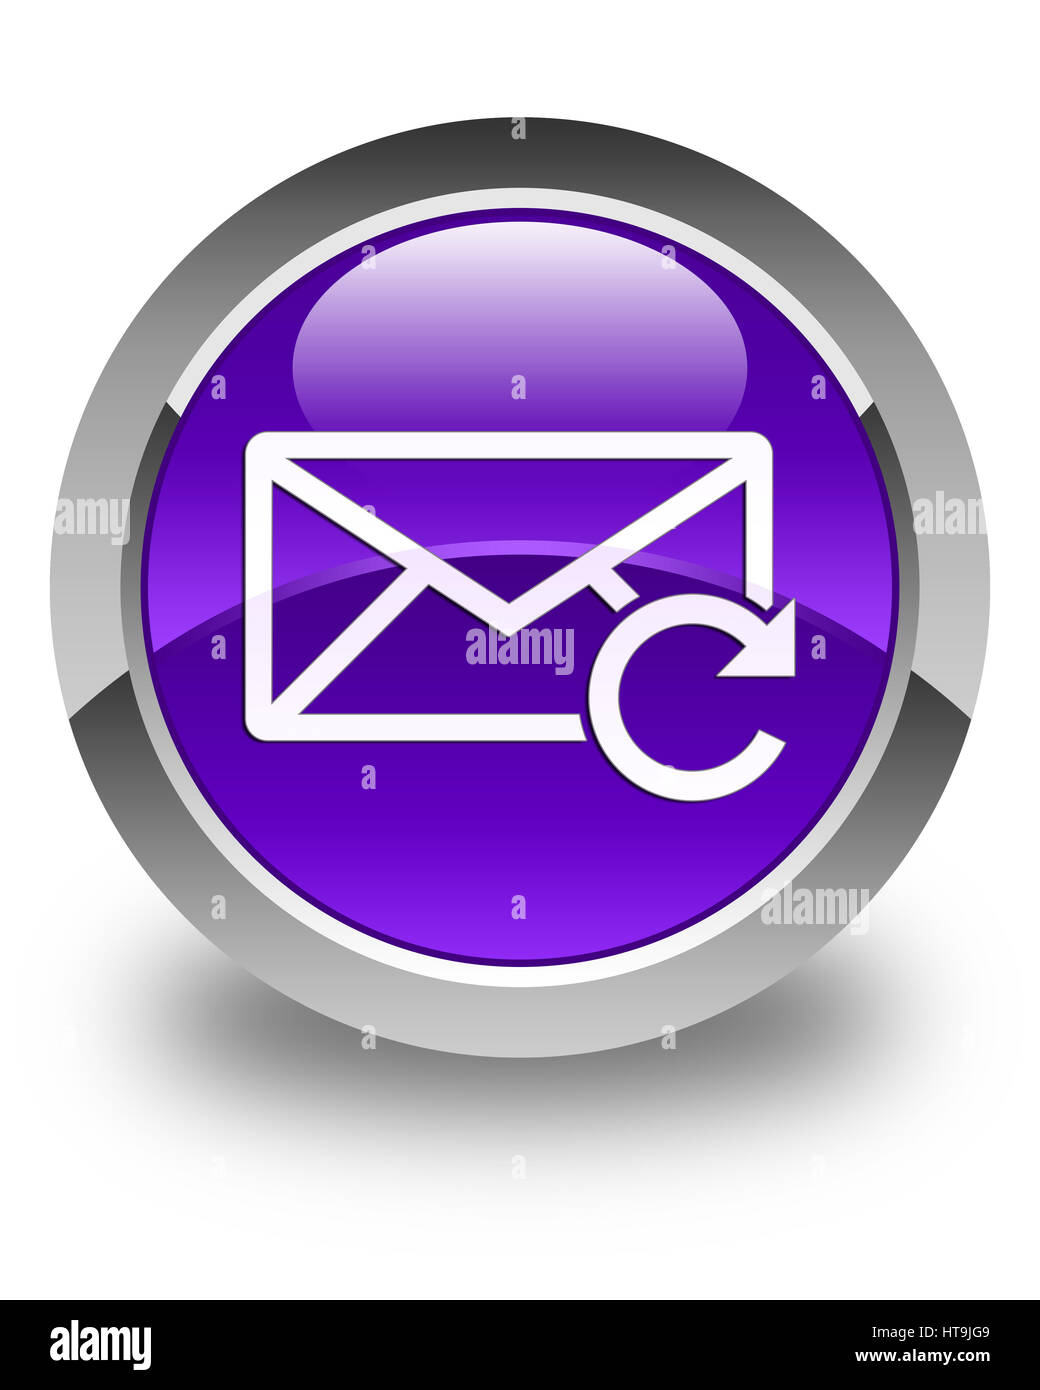 Actualiser icône e-mail isolé sur bouton rond violet brillant abstract illustration Banque D'Images